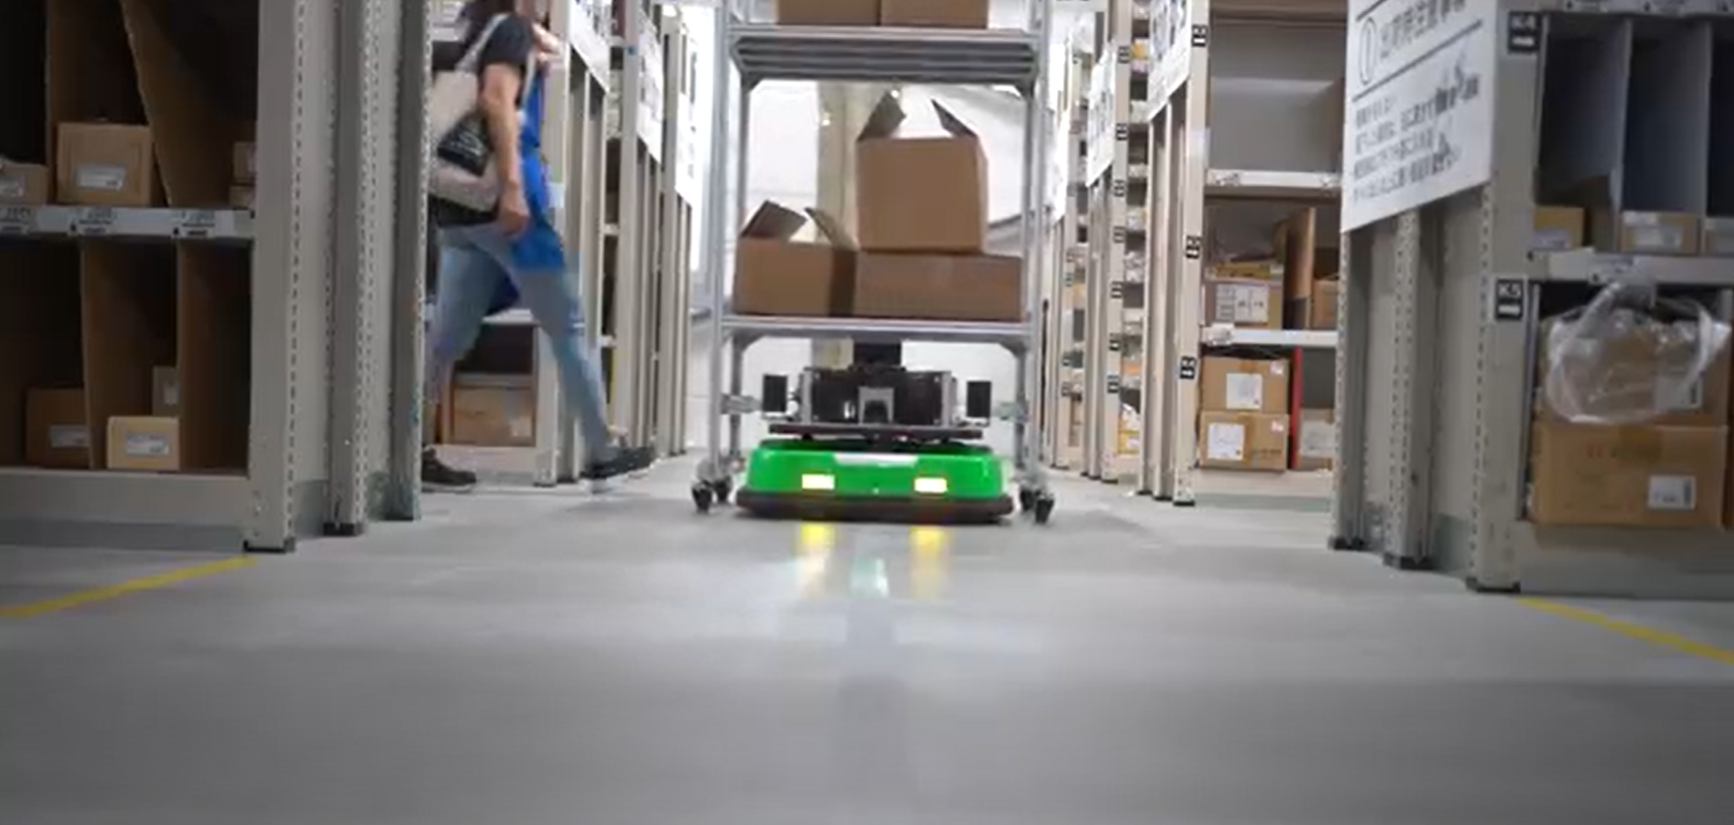 キビテク独自の遠隔制御システムを搭載した自律走行型搬送ロボットによる新しい搬送サービス「HATSキャリー」の販売を開始 ～株式会社八幡ねじの物流倉庫にてピッキングの効率化・改善を目的とした物流DX～1